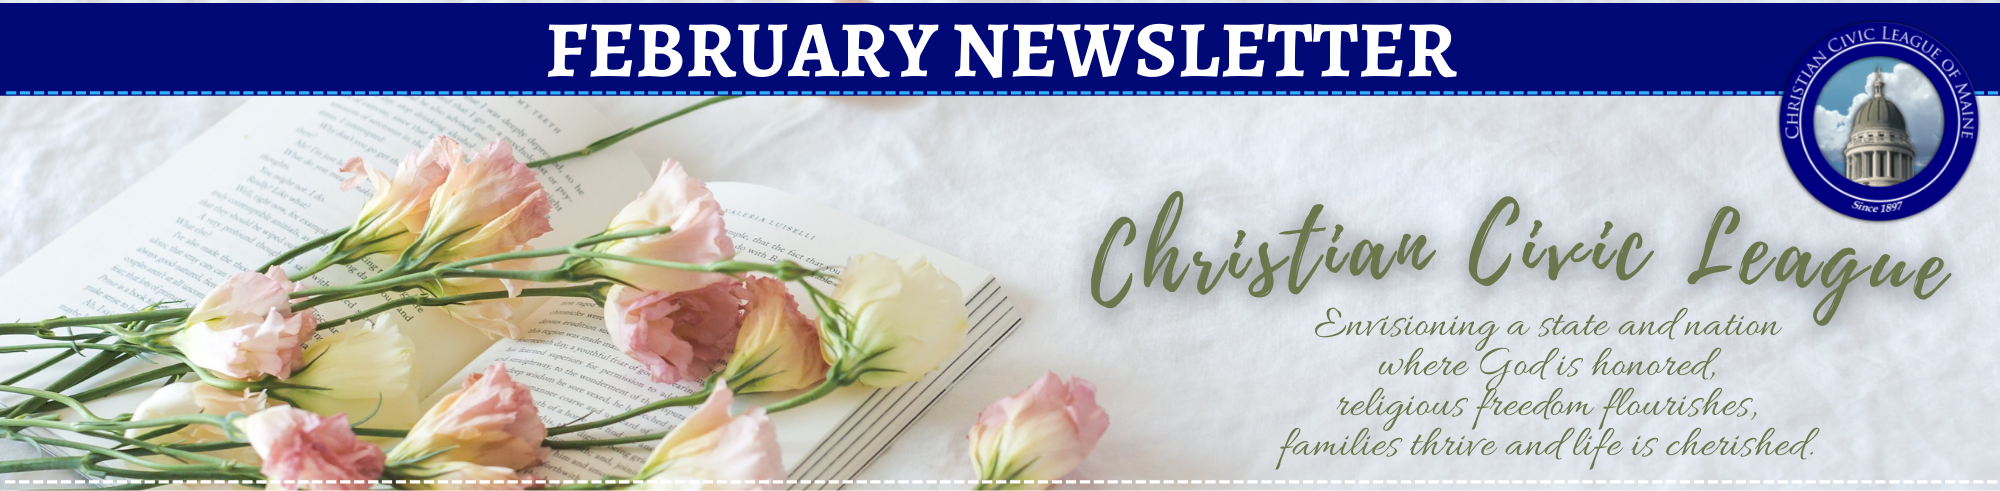 January Newsletter Banner